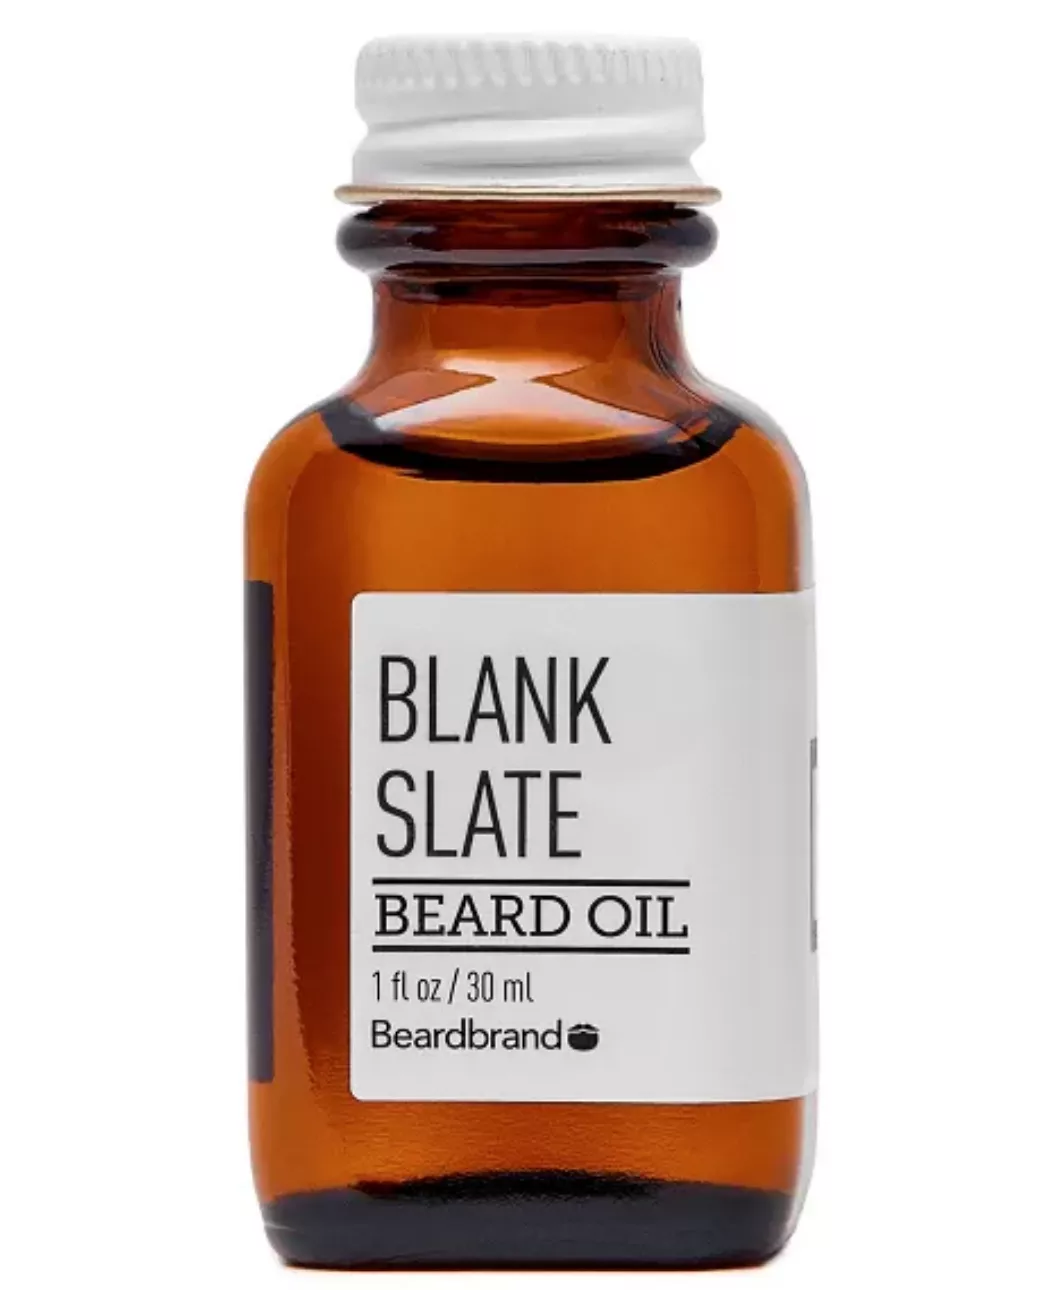 Beardbrand beard oil